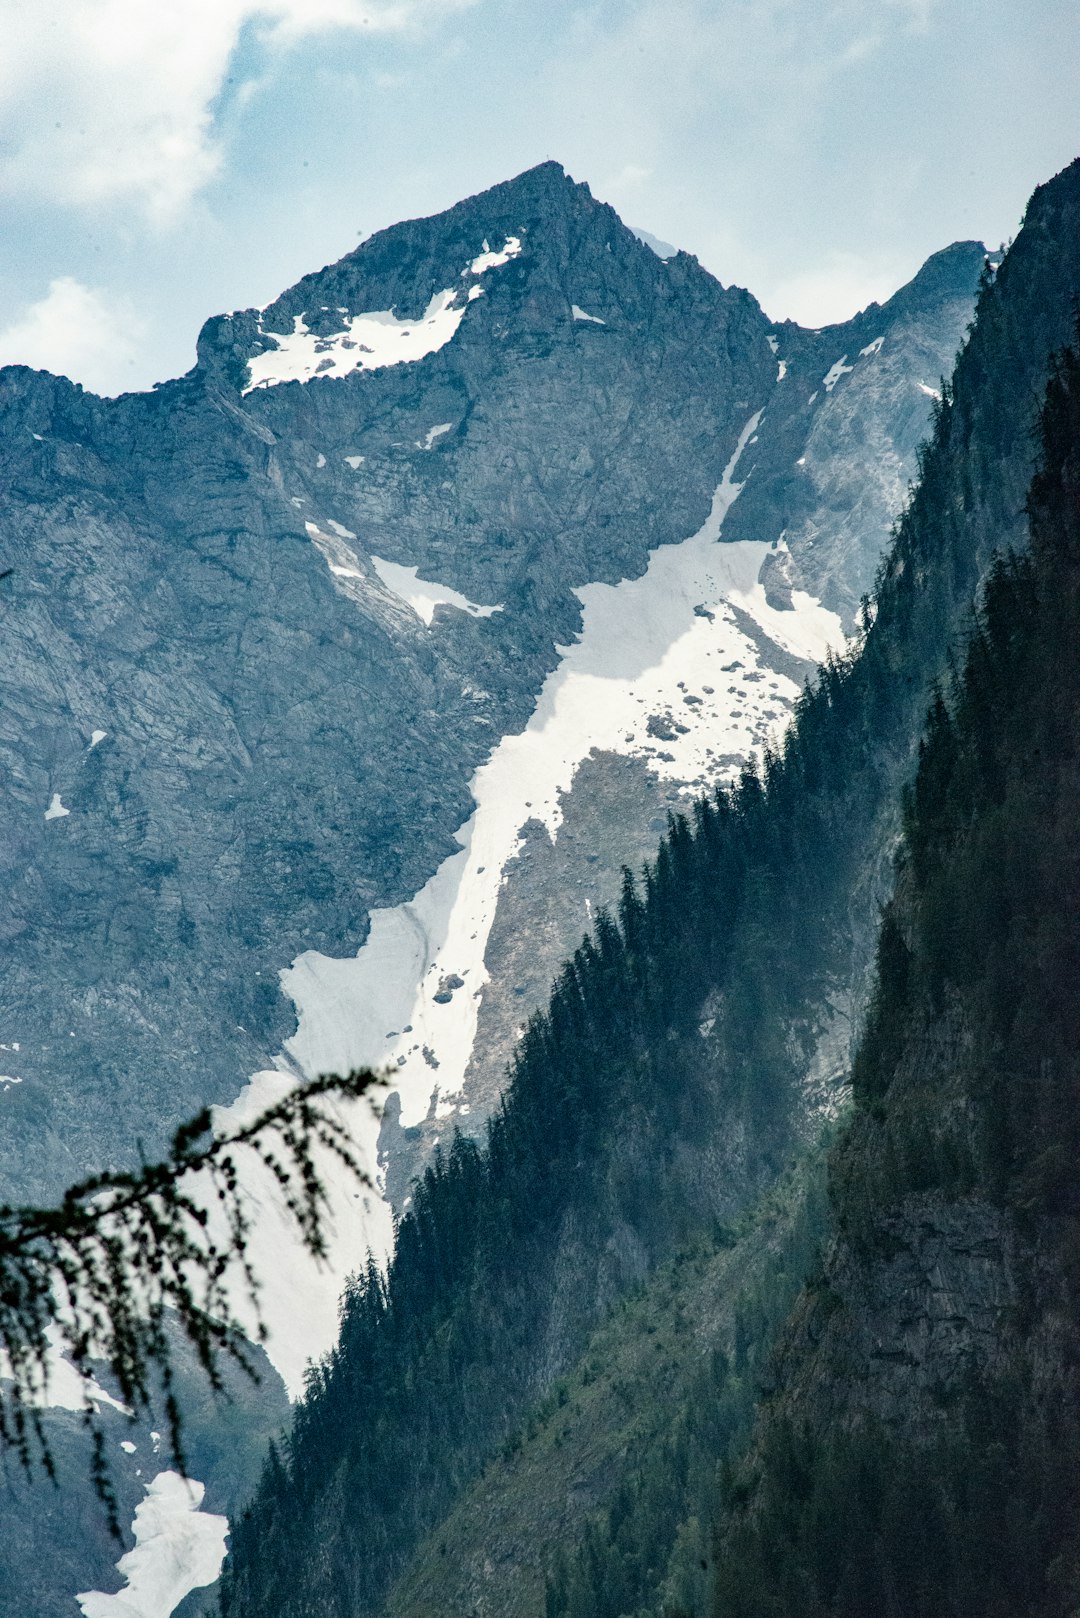 white snow on grey rocky mountain